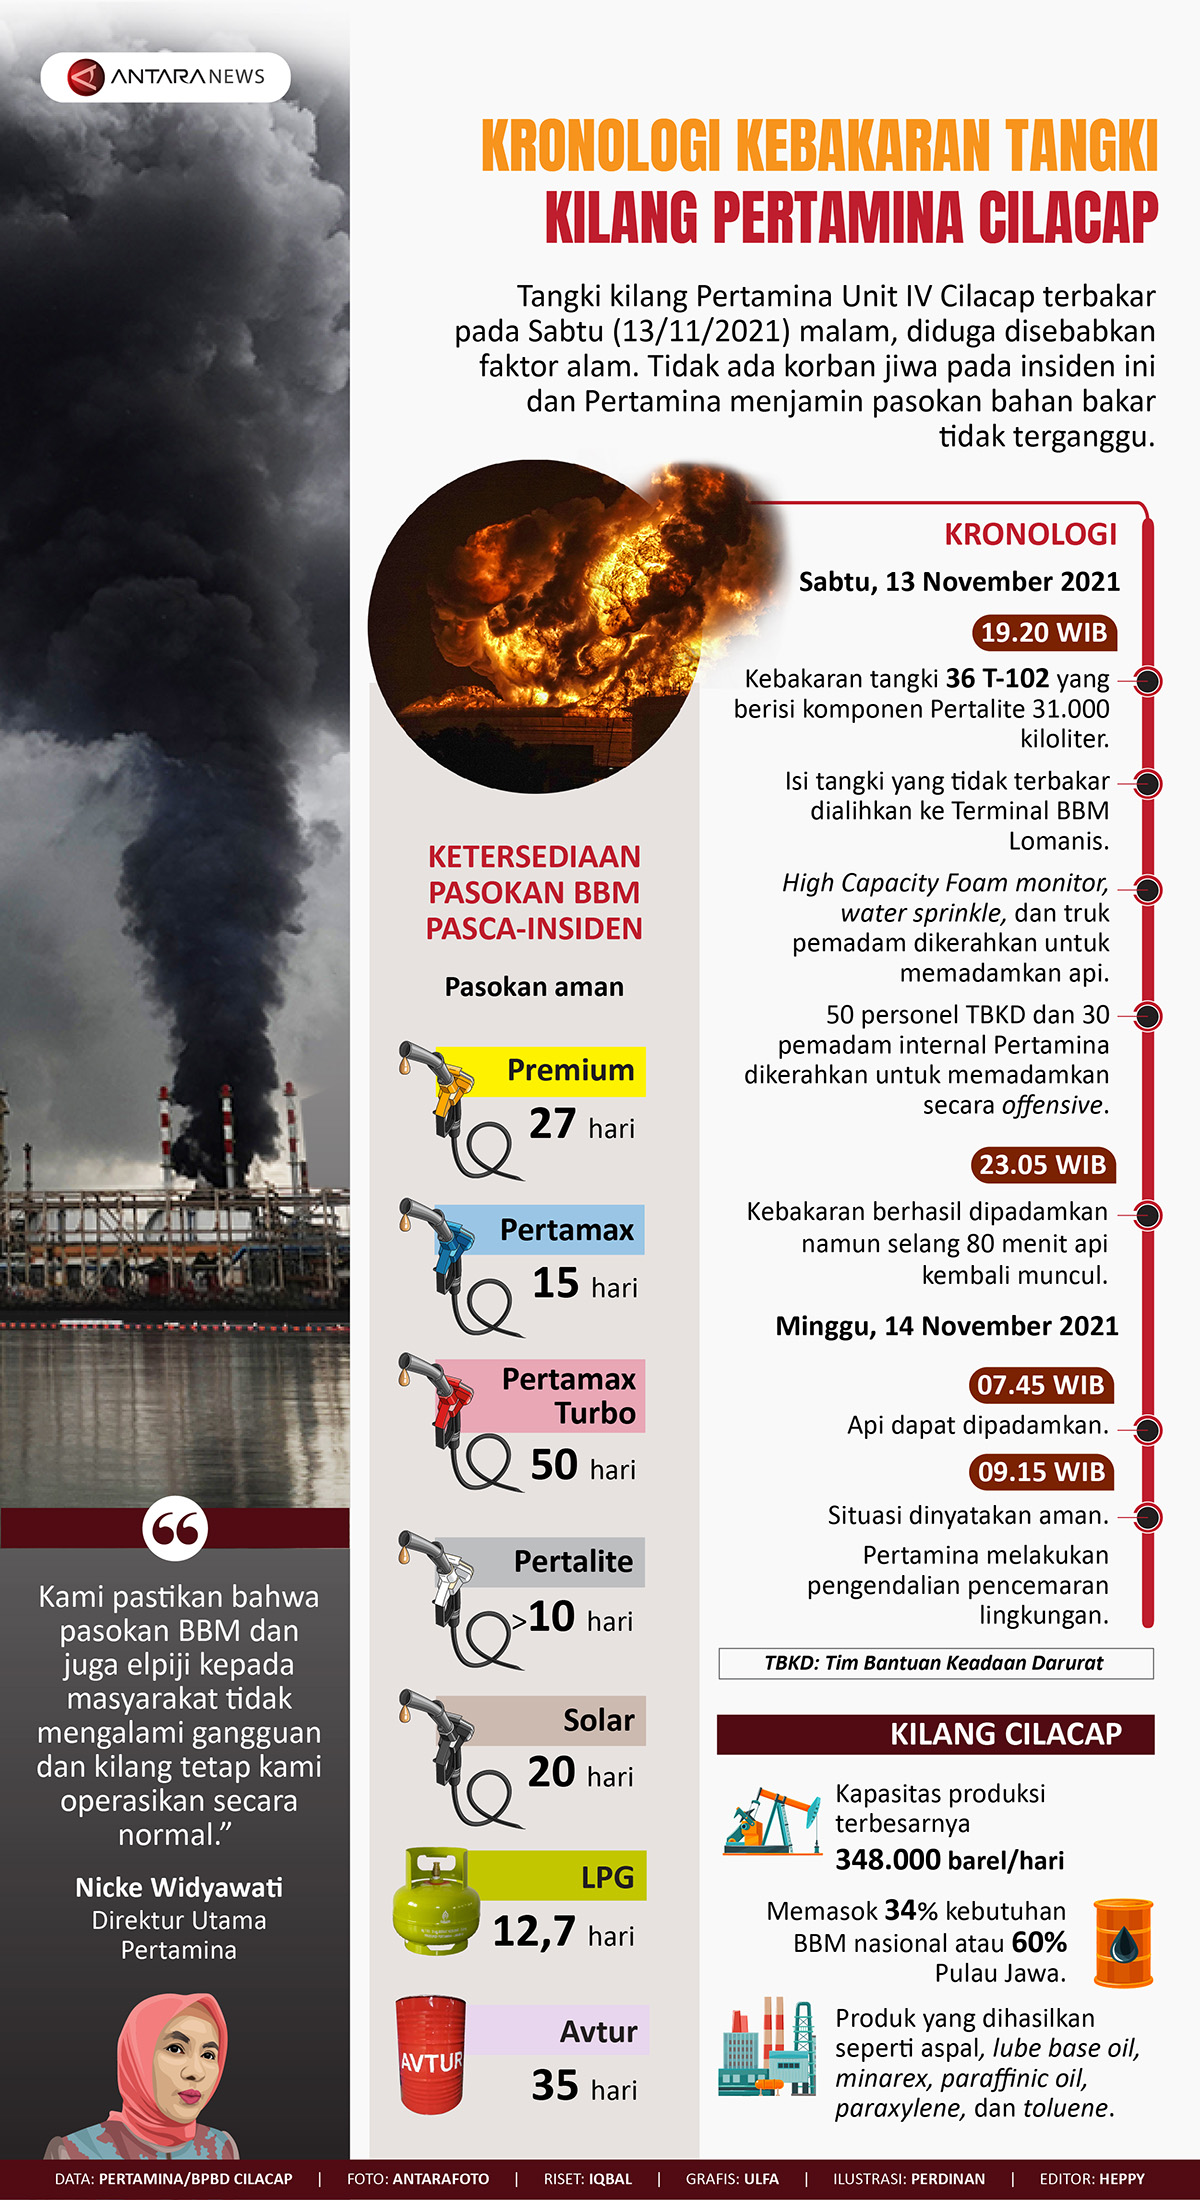 Kronologi kebakaran tangki kilang Pertamina Cilacap